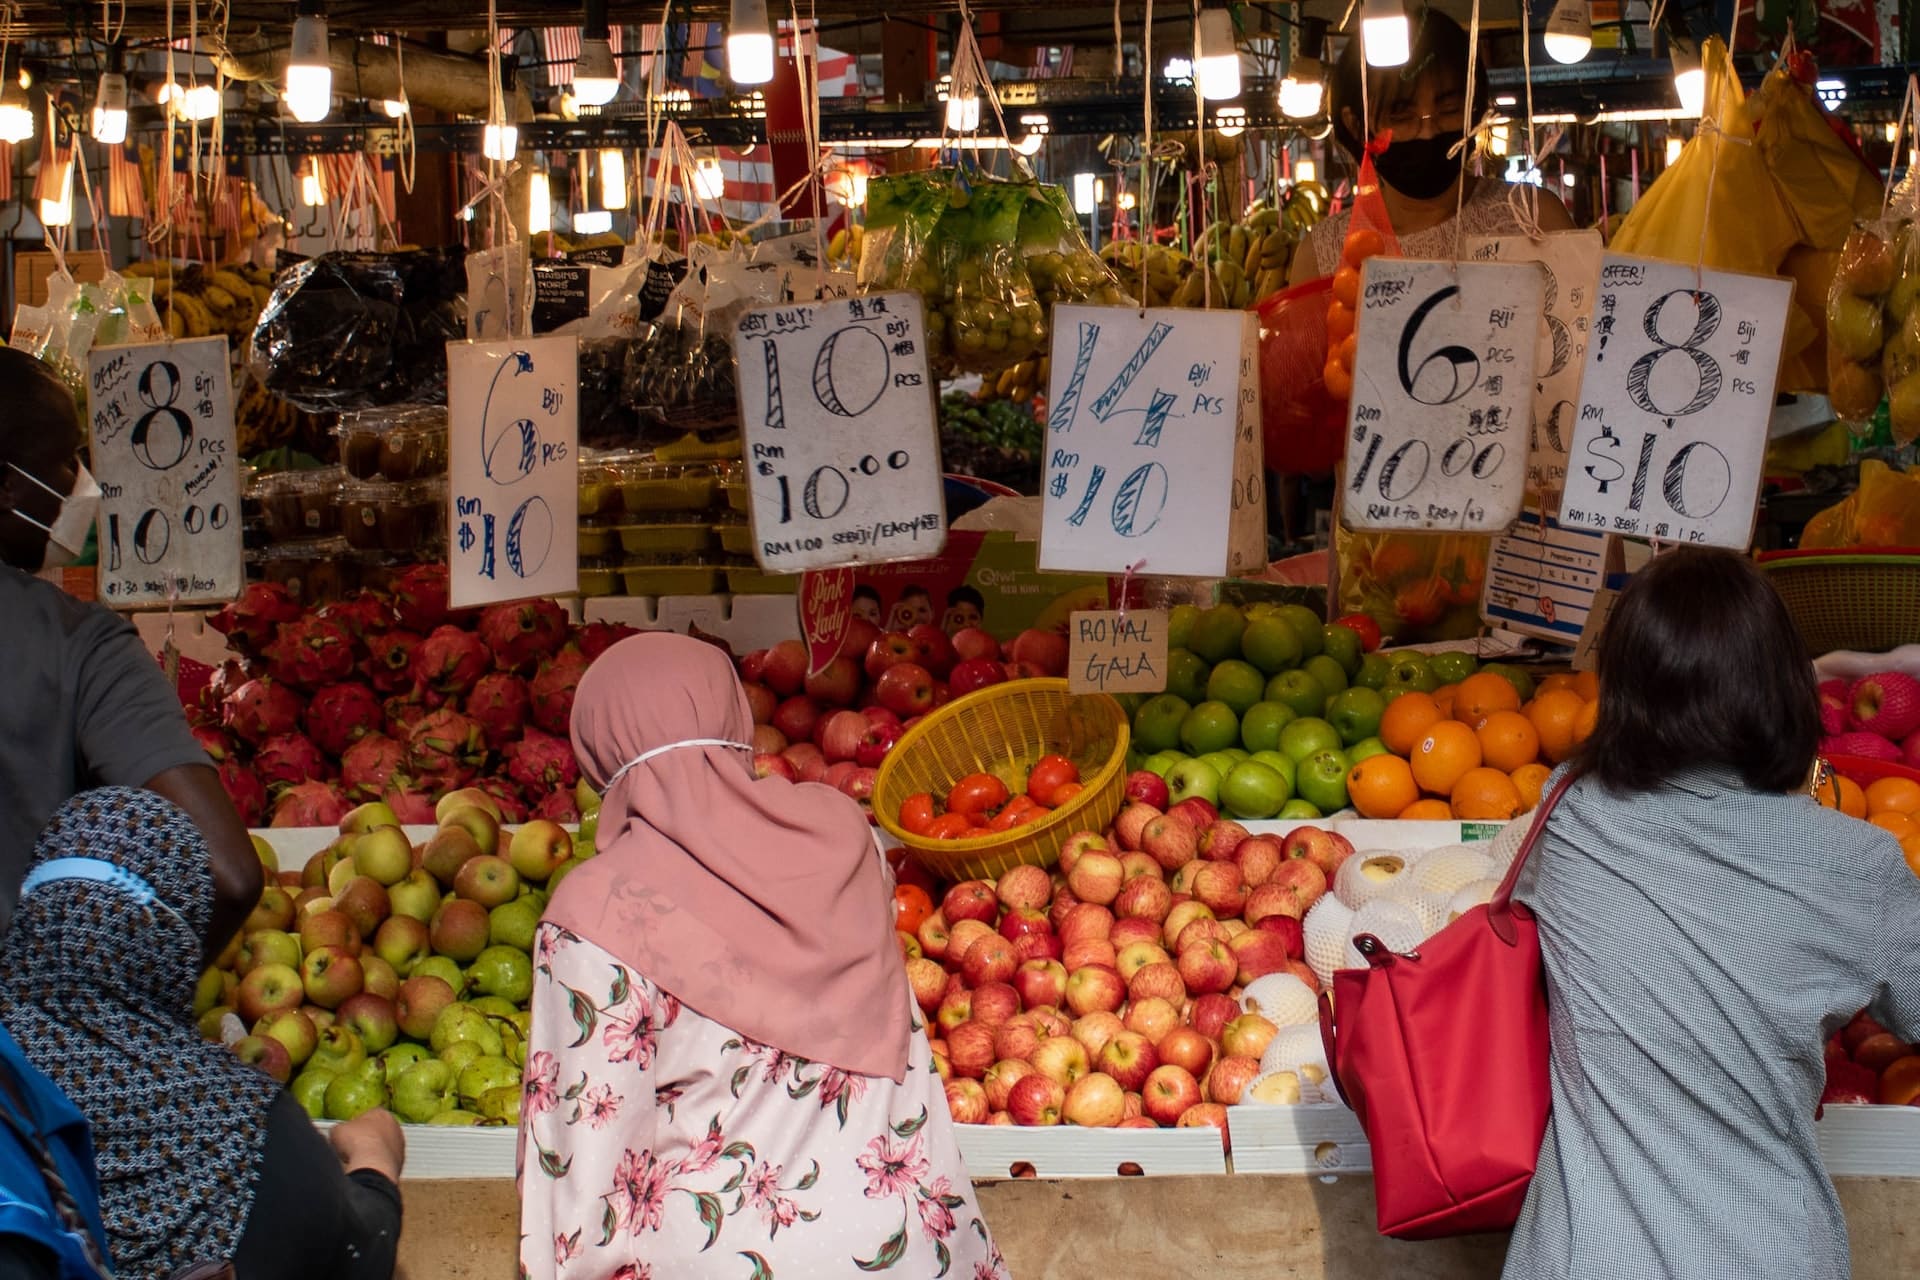 Conosciuto principalmente per il suo mercato, Chow Kit è un quartiere vivace e una delle migliori zone in cui soggiornare a Kuala Lumpur.